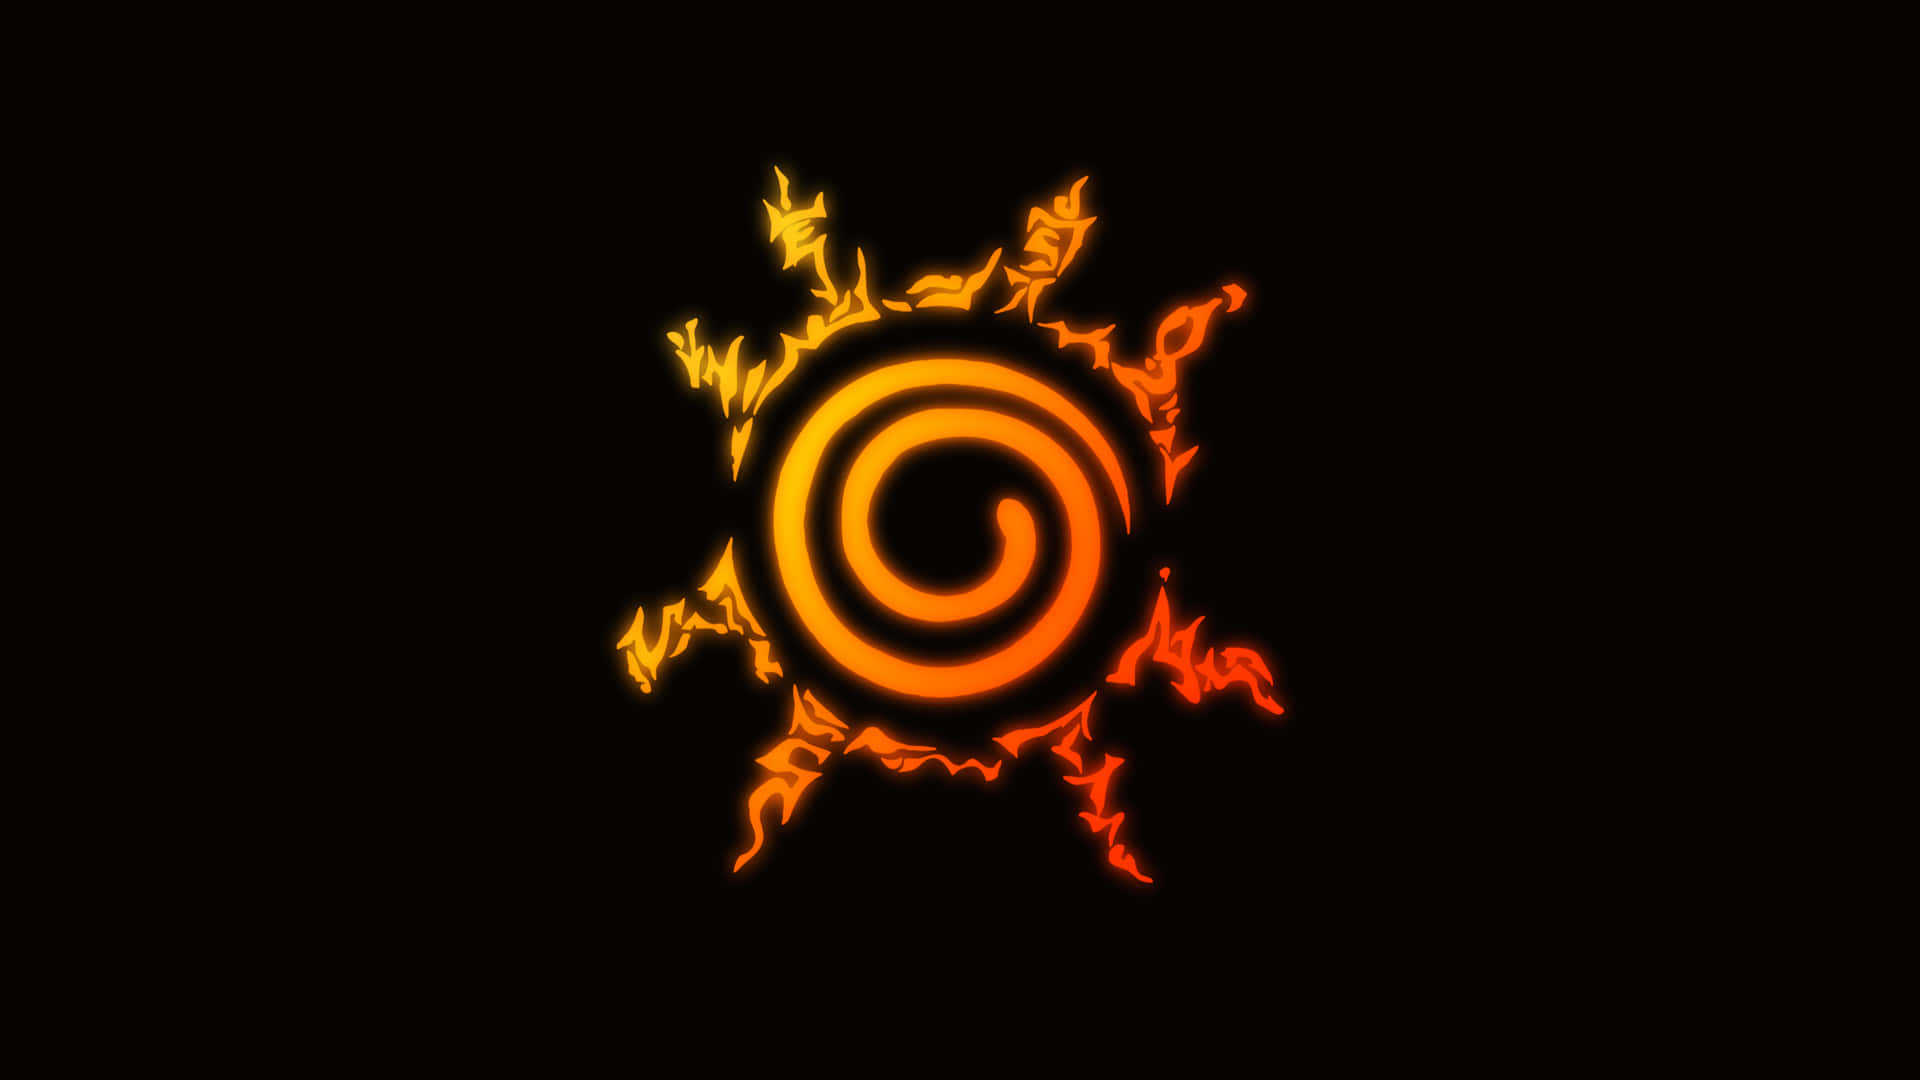 Fondode Pantalla Genial De Naruto Con El Logo De Kurama Para Escritorio. Fondo de pantalla